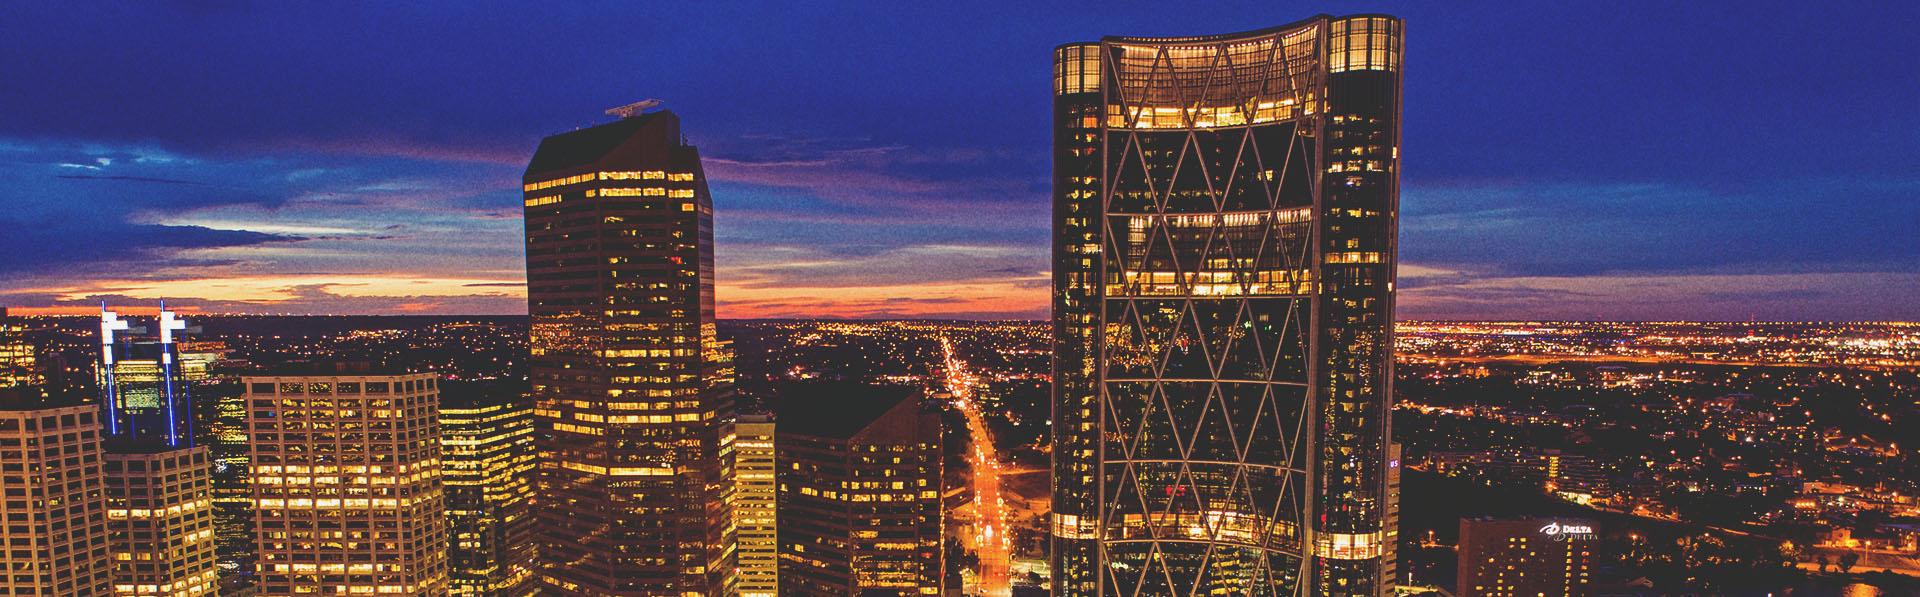 Downtown Calgary Skyline at night